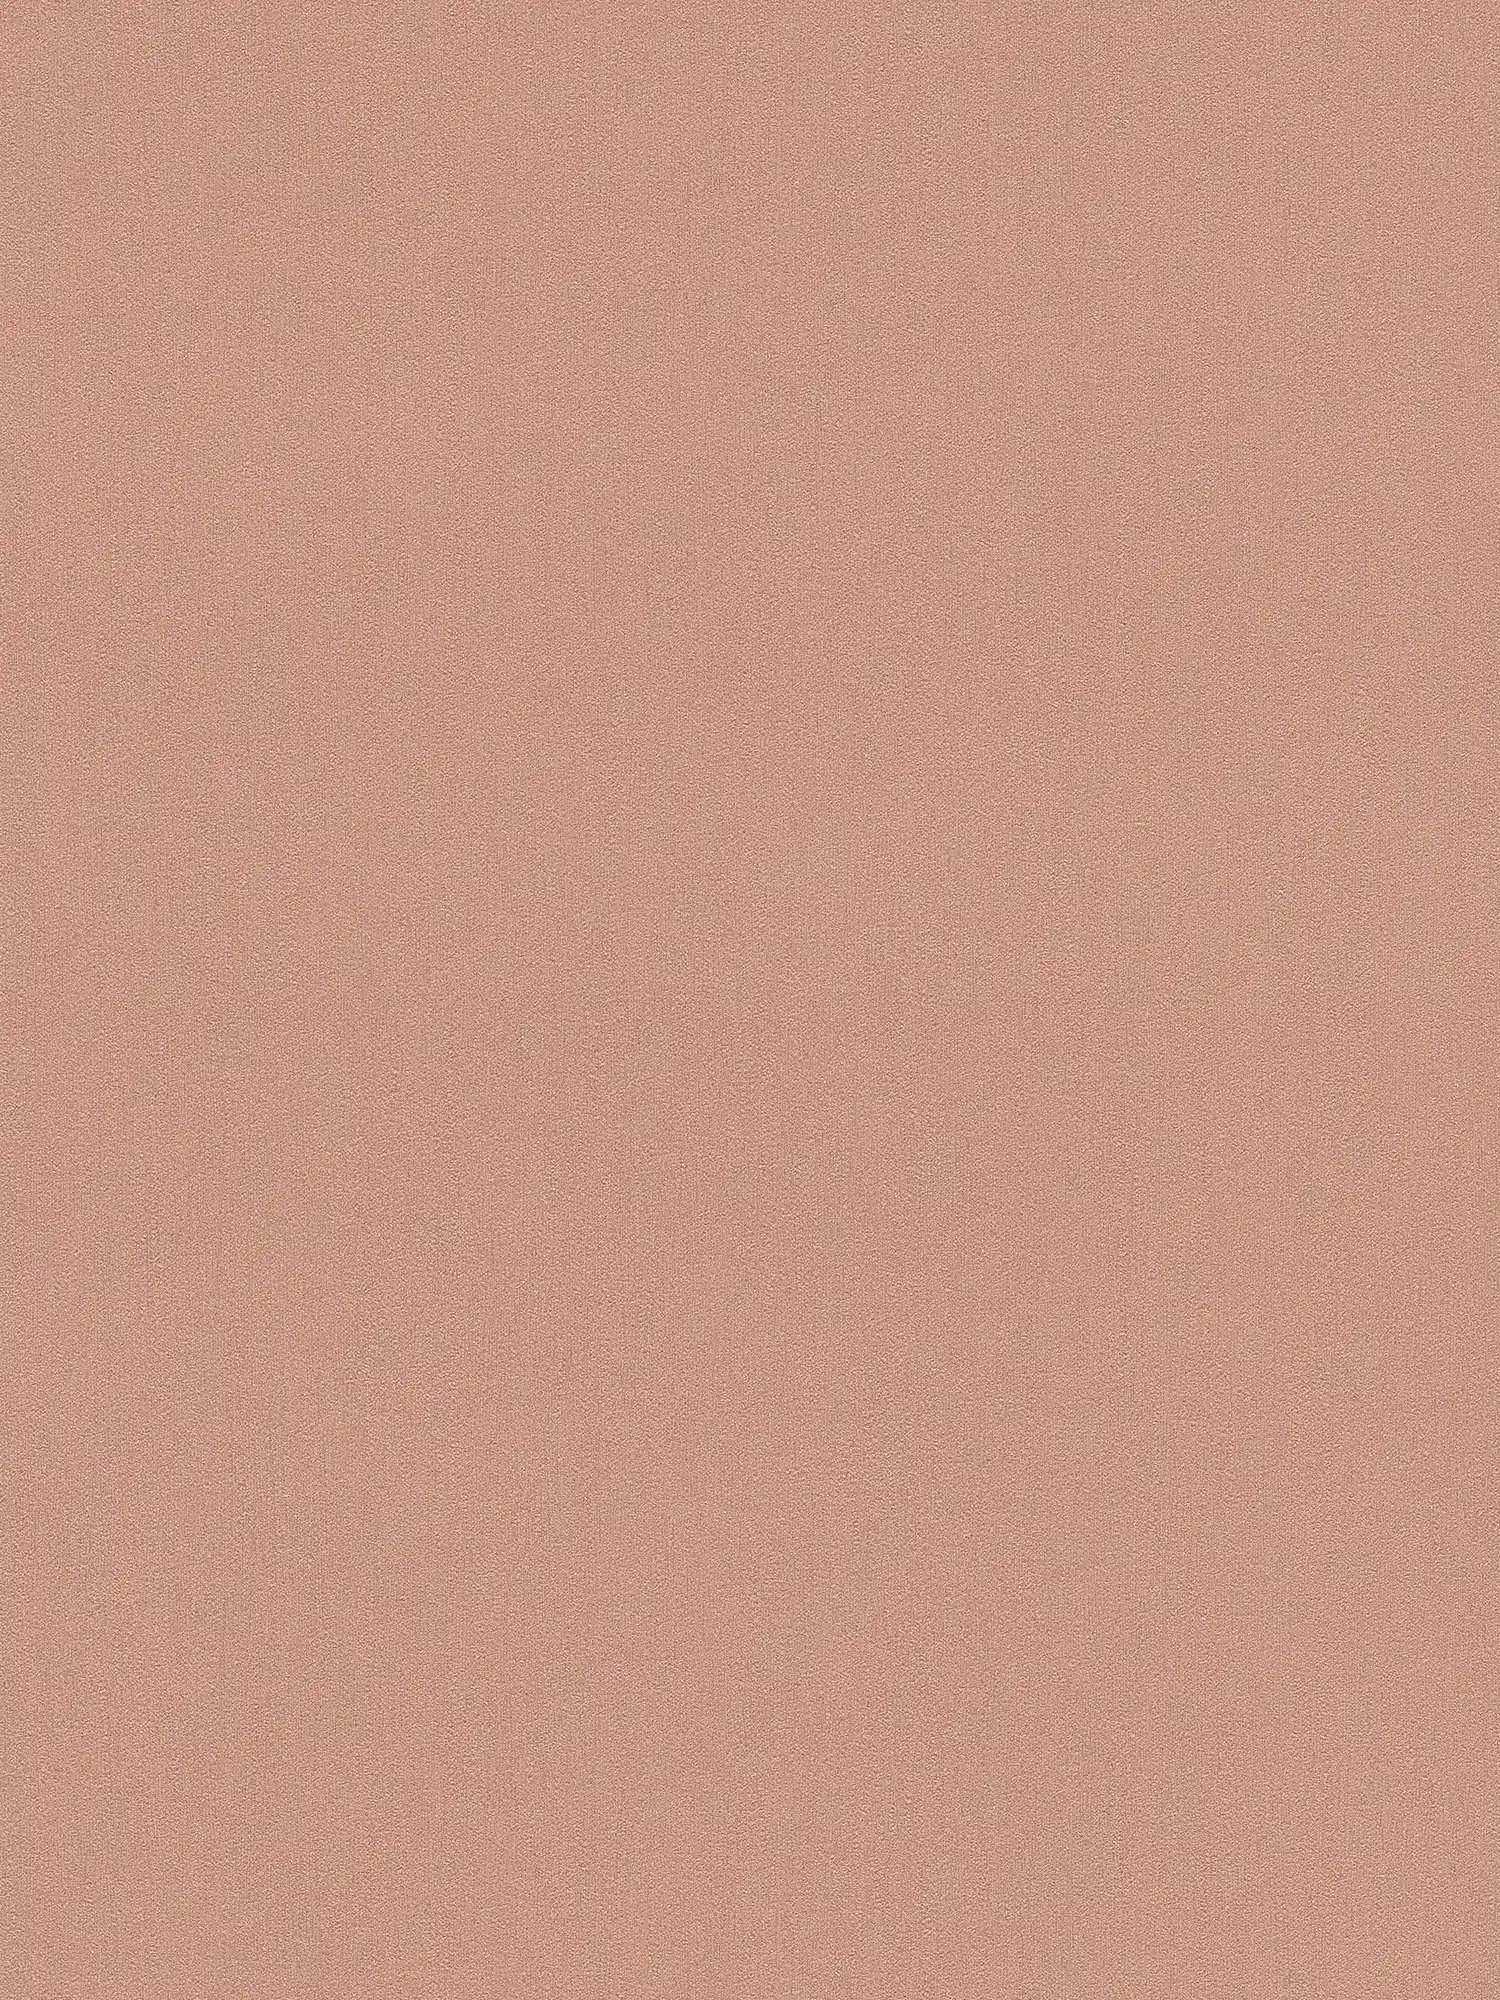 Papel pintado no tejido Karl LAGERFELD liso y con textura - cobre
